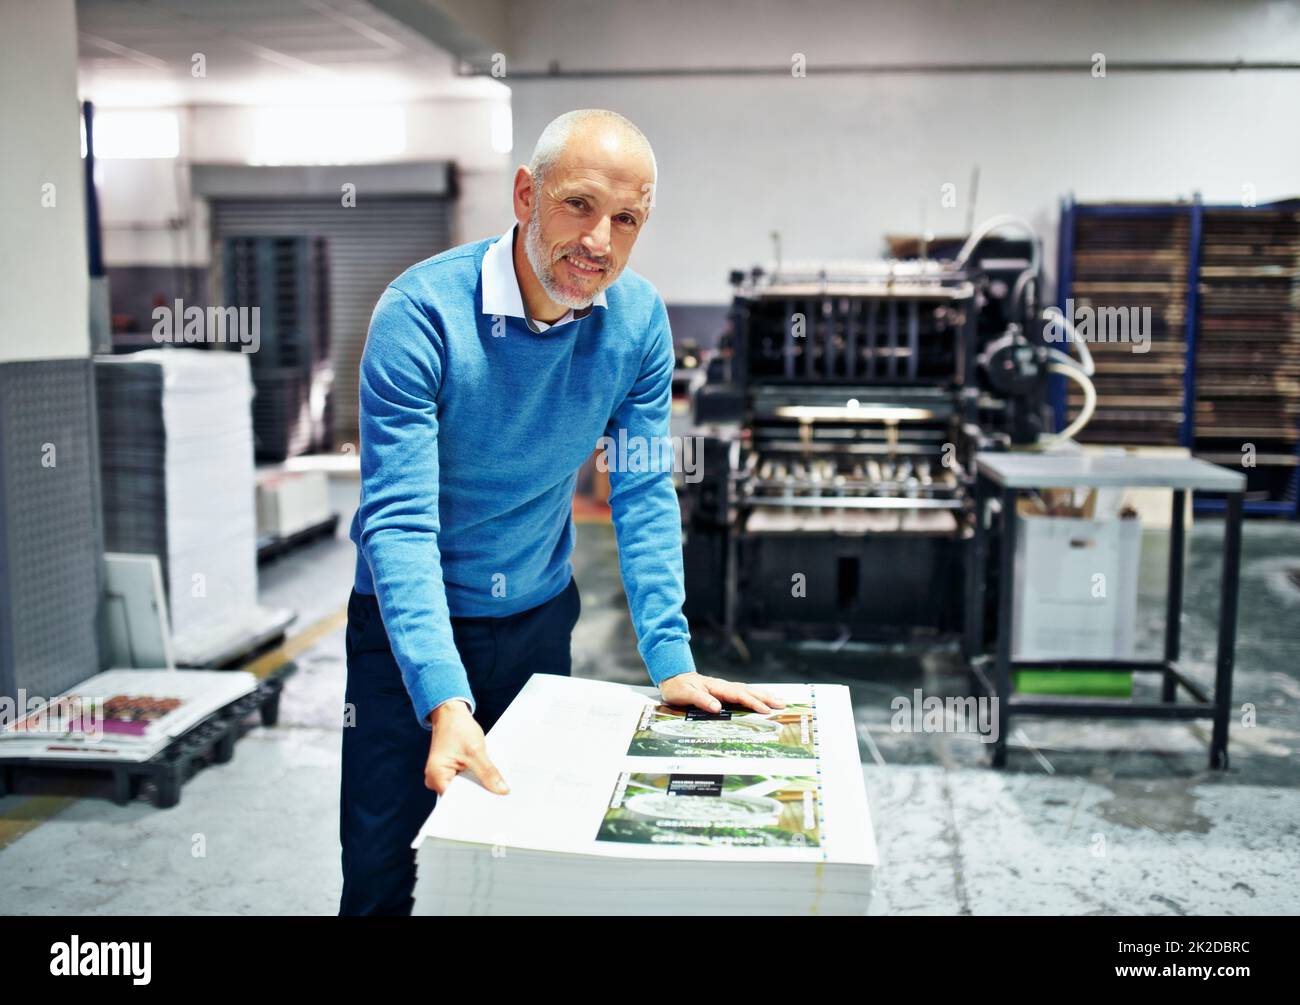 Il prodotto è la mia reputazione. Ritratto di un uomo che controlla la qualità di una stampa eseguita in fabbrica. Foto Stock